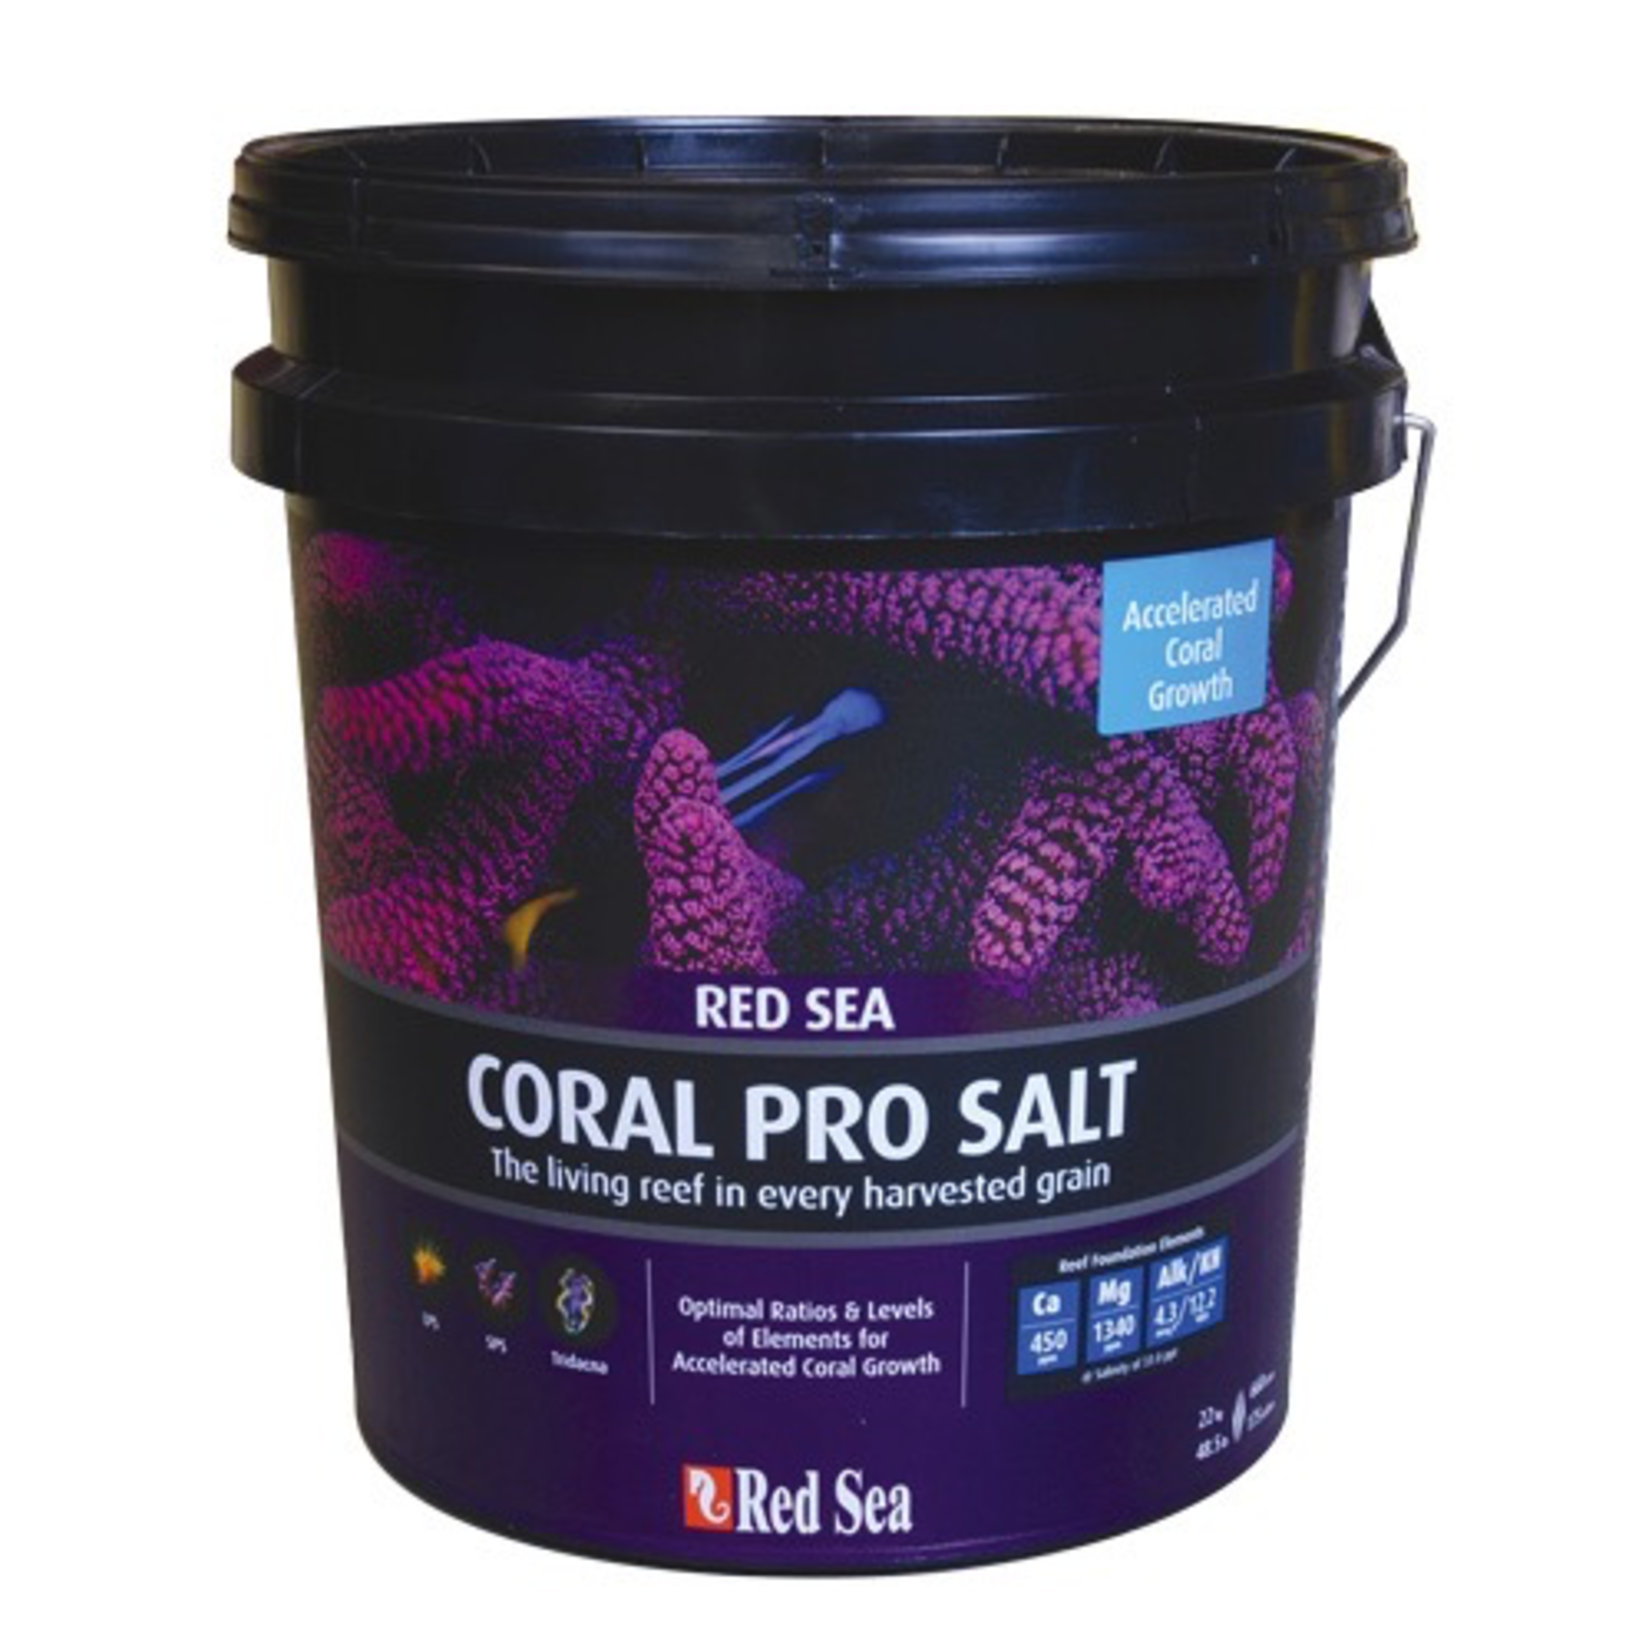 RED SEA (W) Coral Pro Salt - 175 Gallon